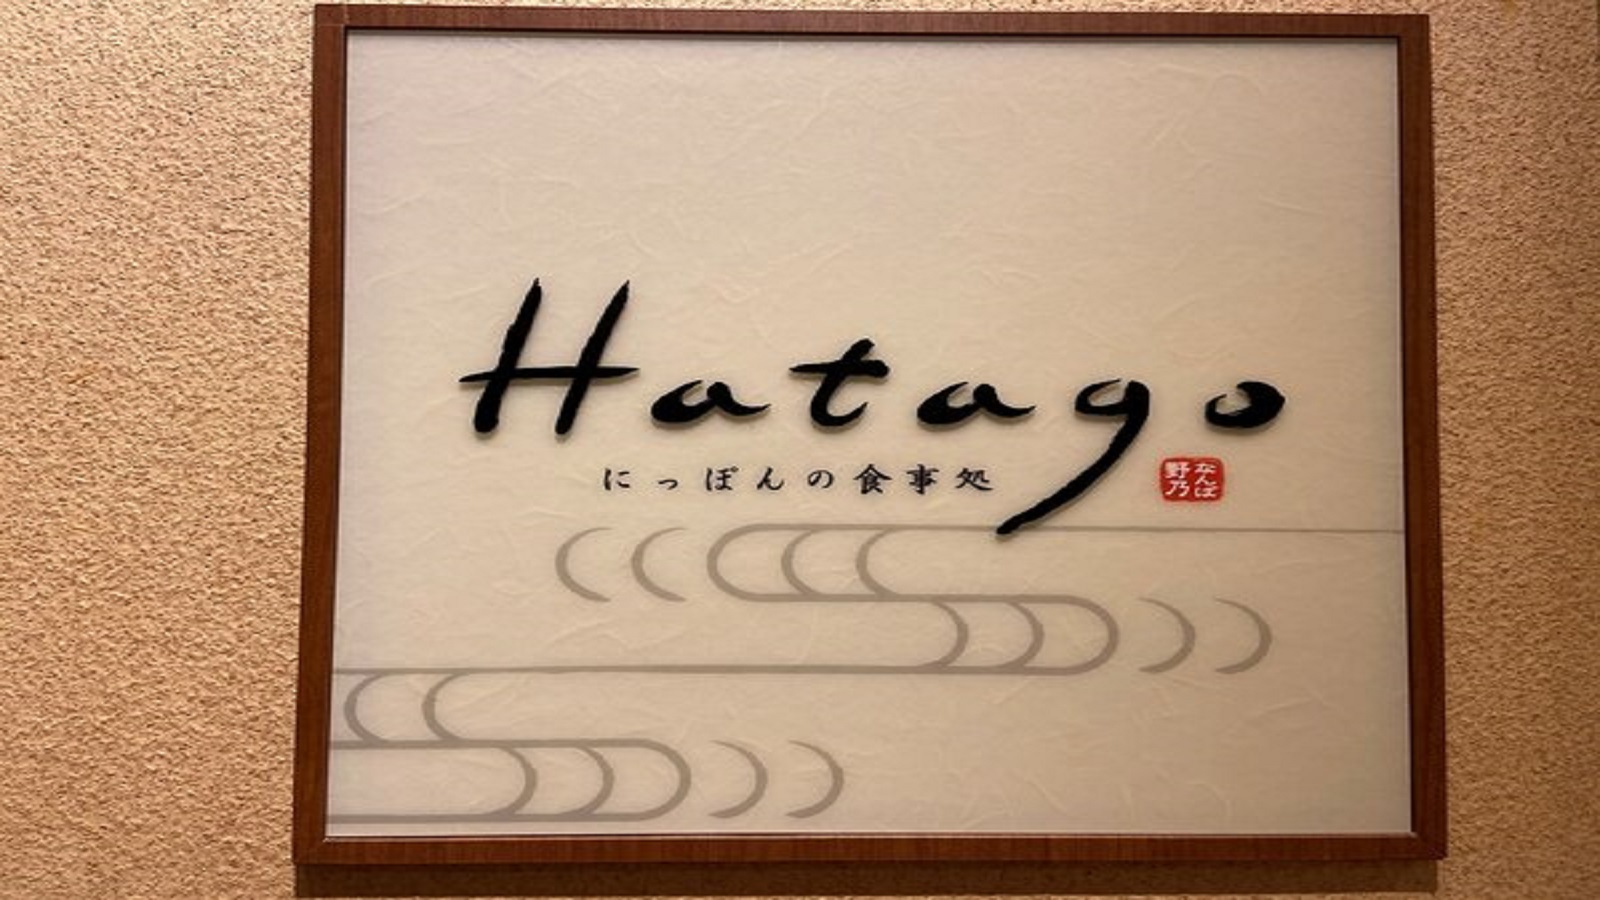 【Hatago】1F・レストラン 営業時間 07:00~09:00 (最終入店 08:45)